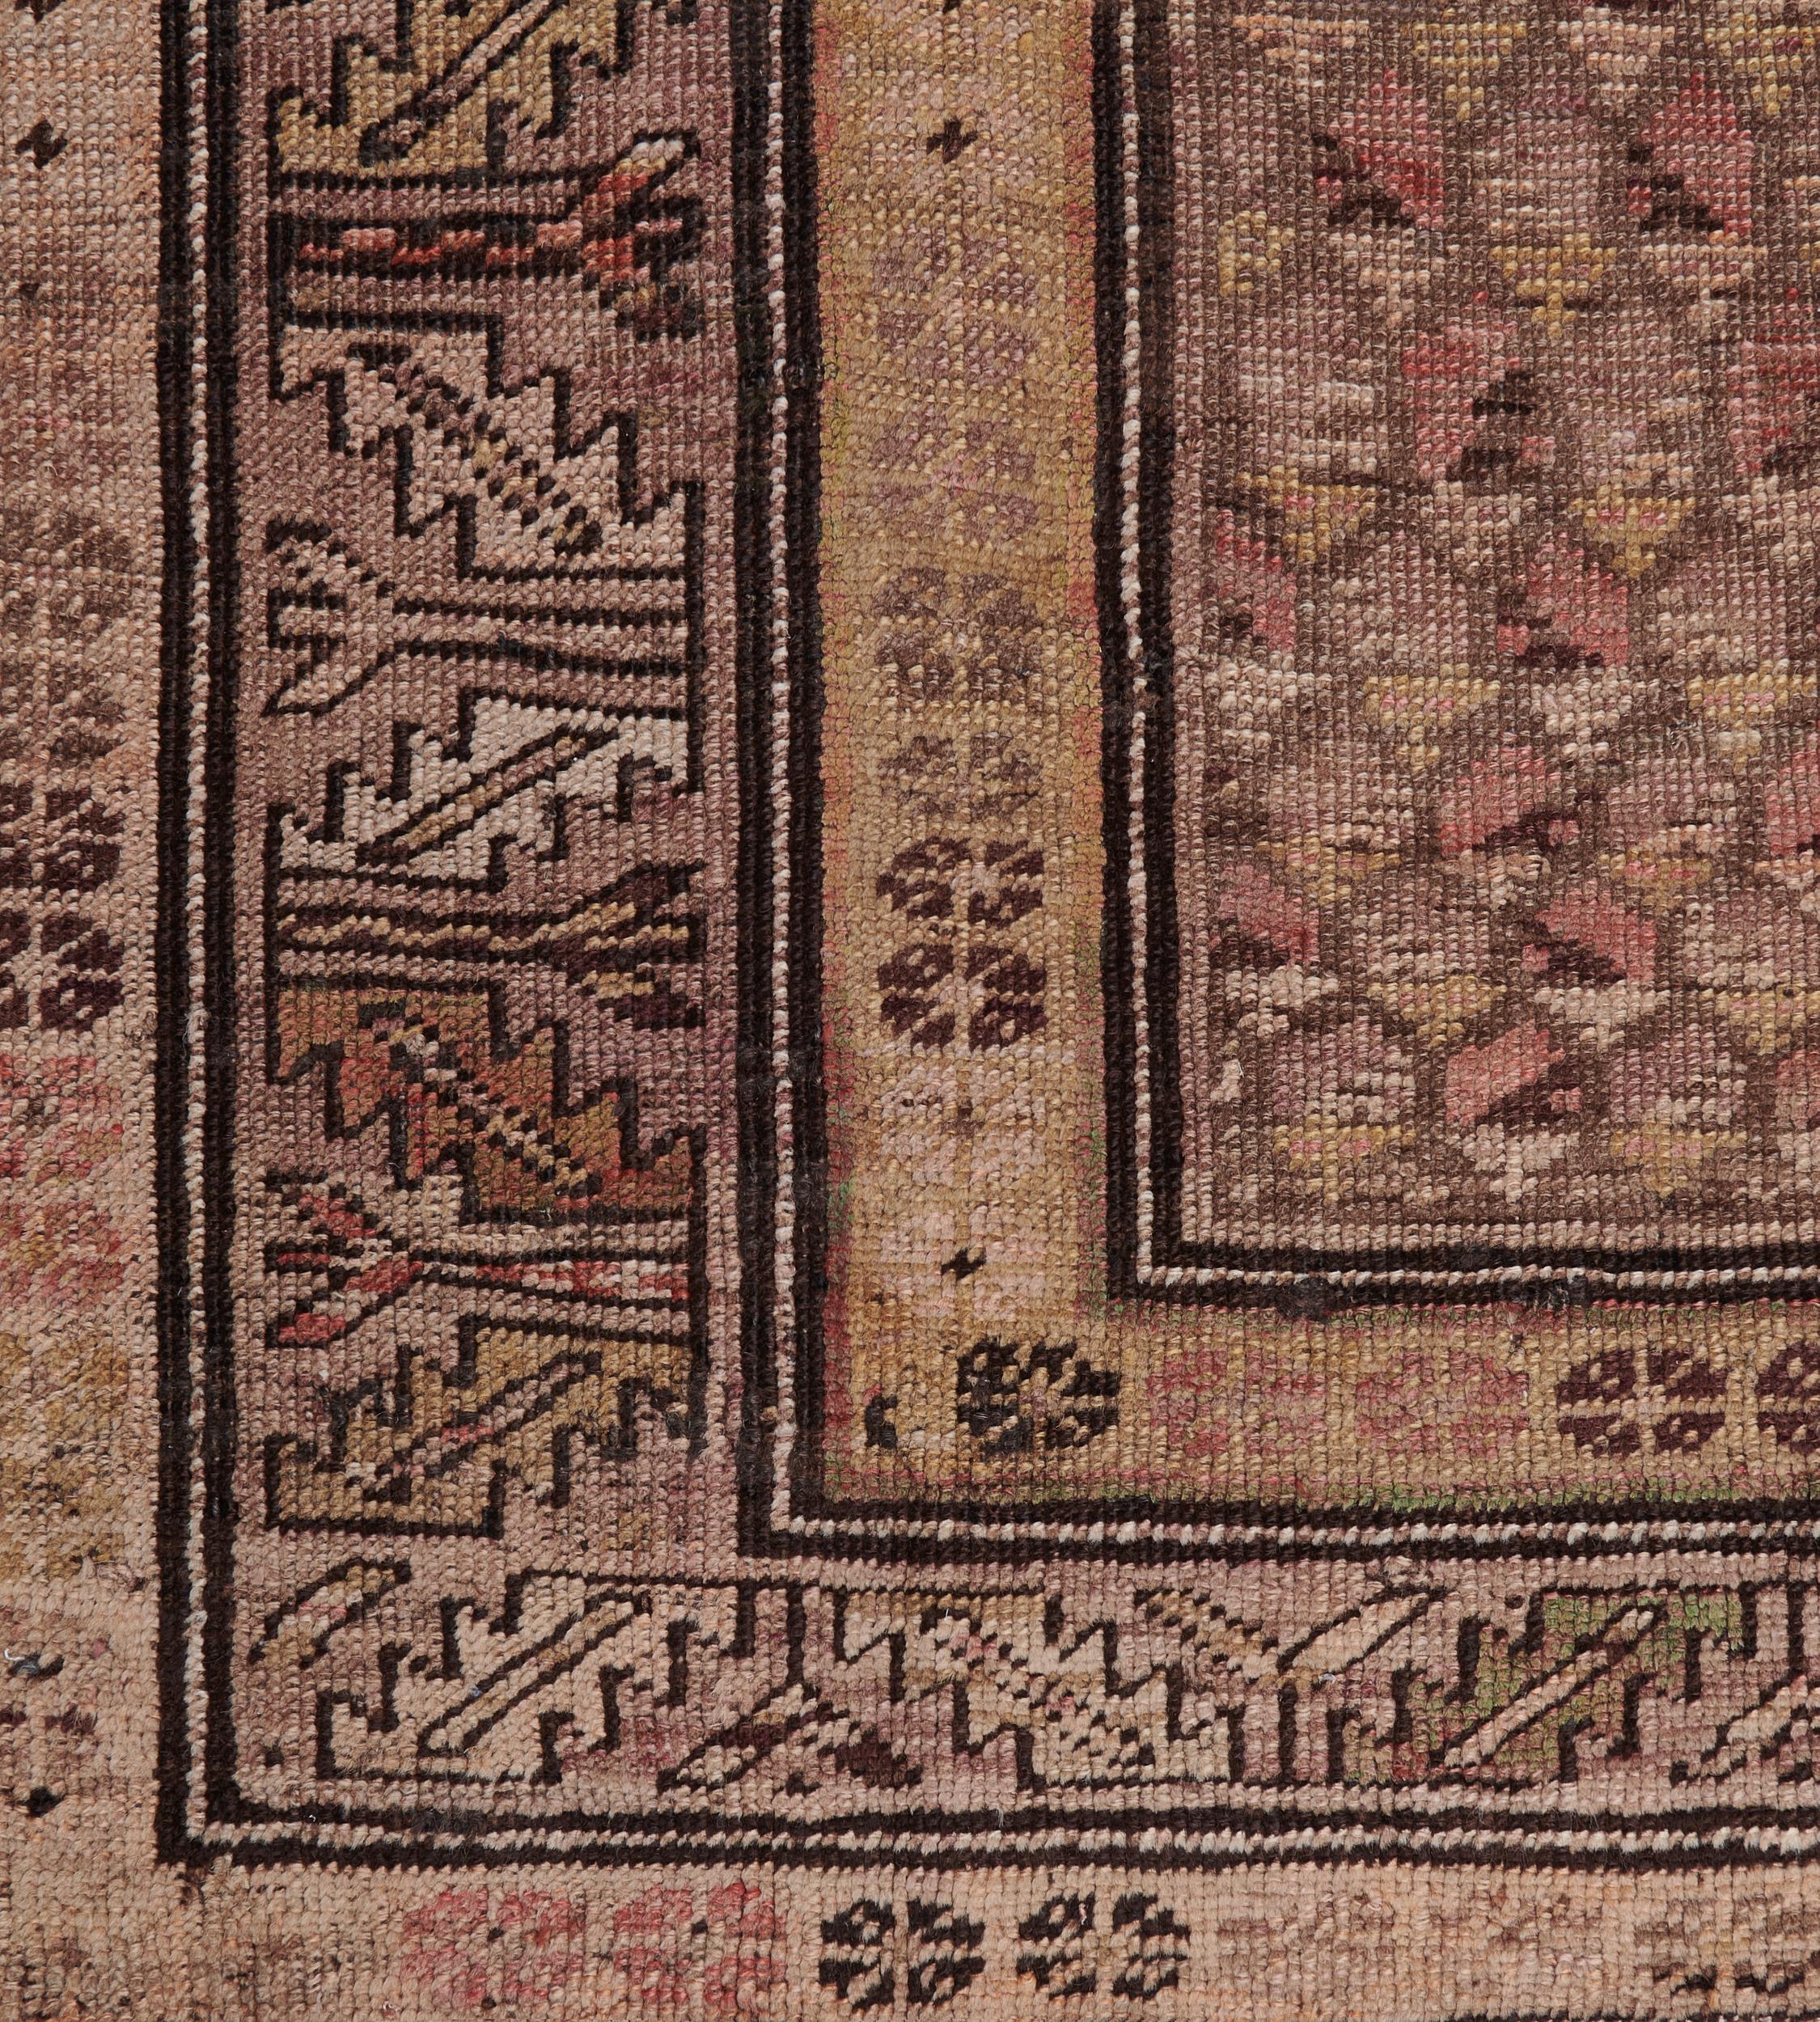 Dieser traditionelle handgewebte persische Karabagh-Teppich hat ein schattiertes Tabakfeld mit einem kupferfarbenen Paisleymuster in einer breiten schattierten tabakfarbenen gezackten Blattbordüre zwischen schattierten sandfarbenen cremefarbenen